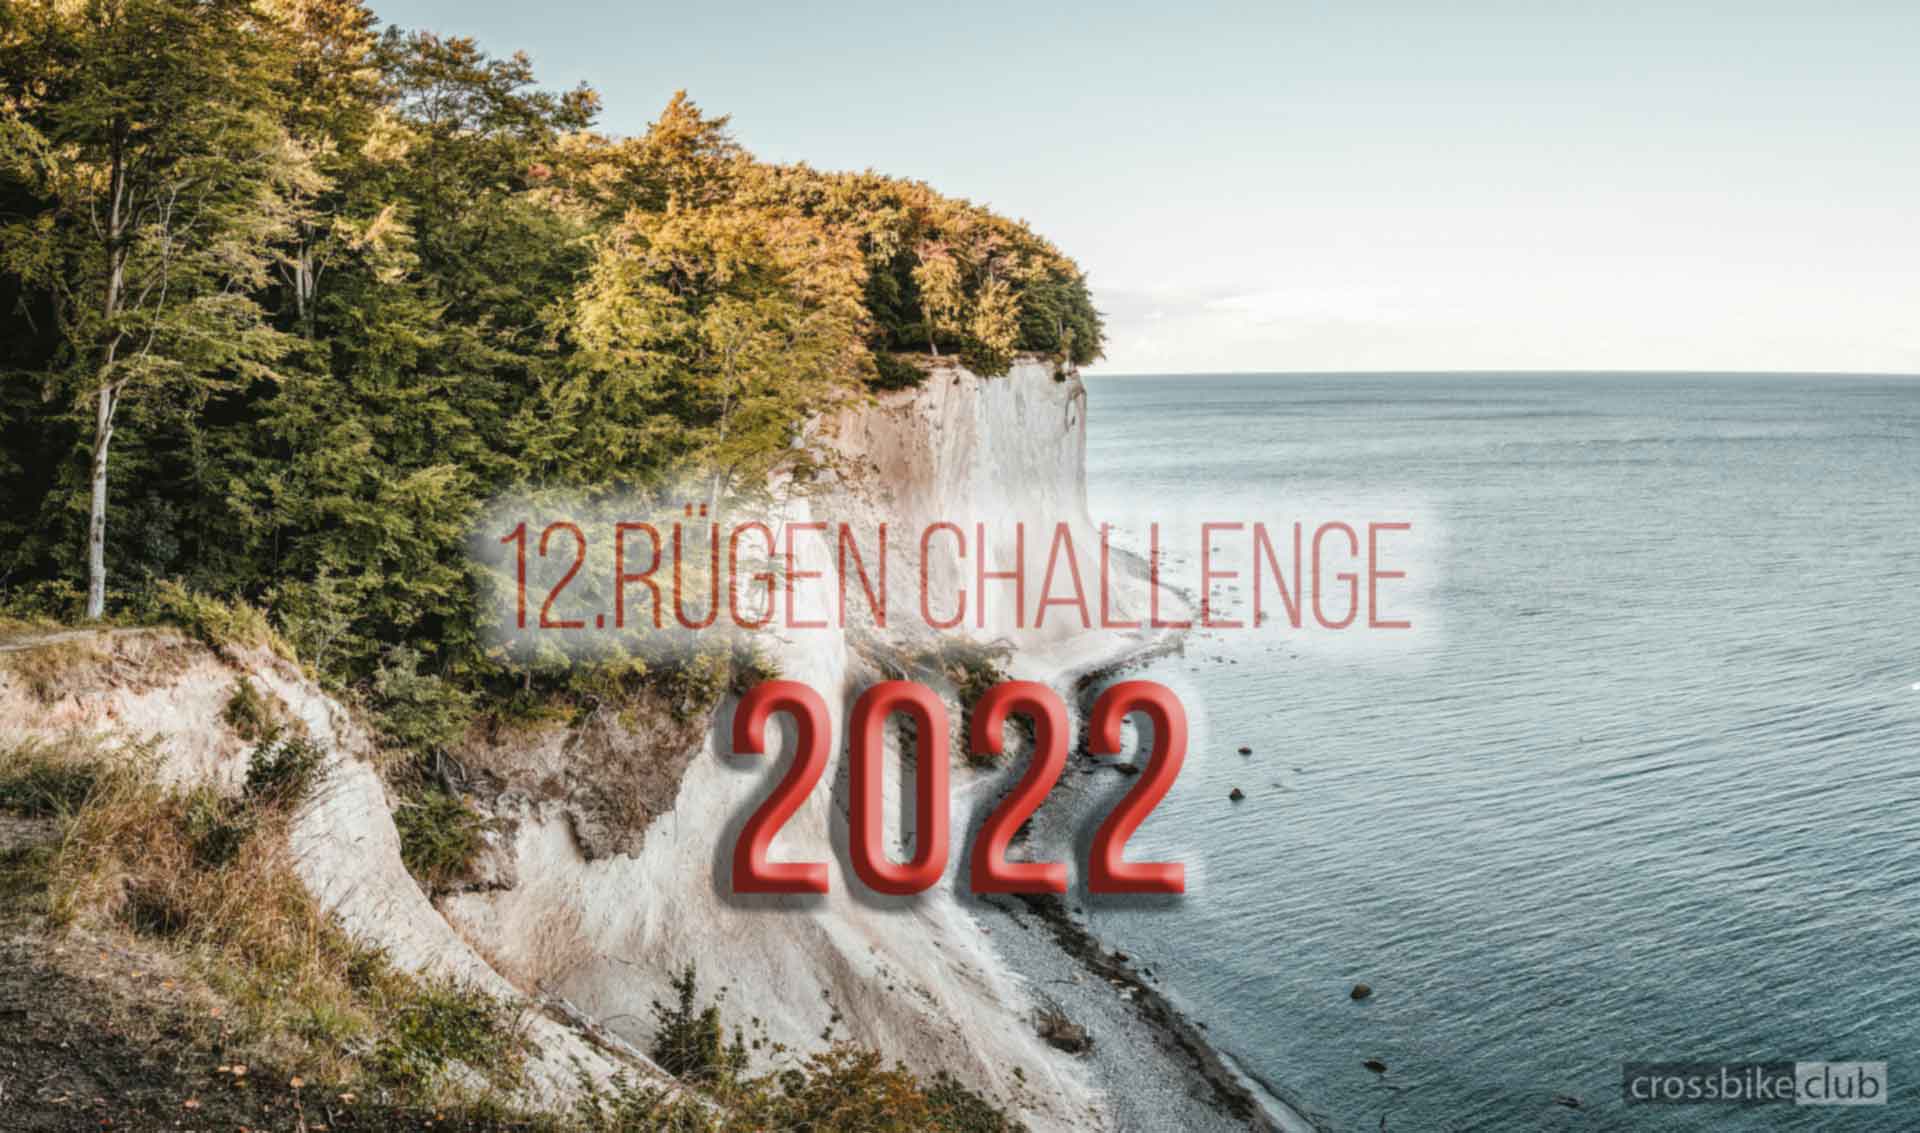 12. Rügen Challenge 2022